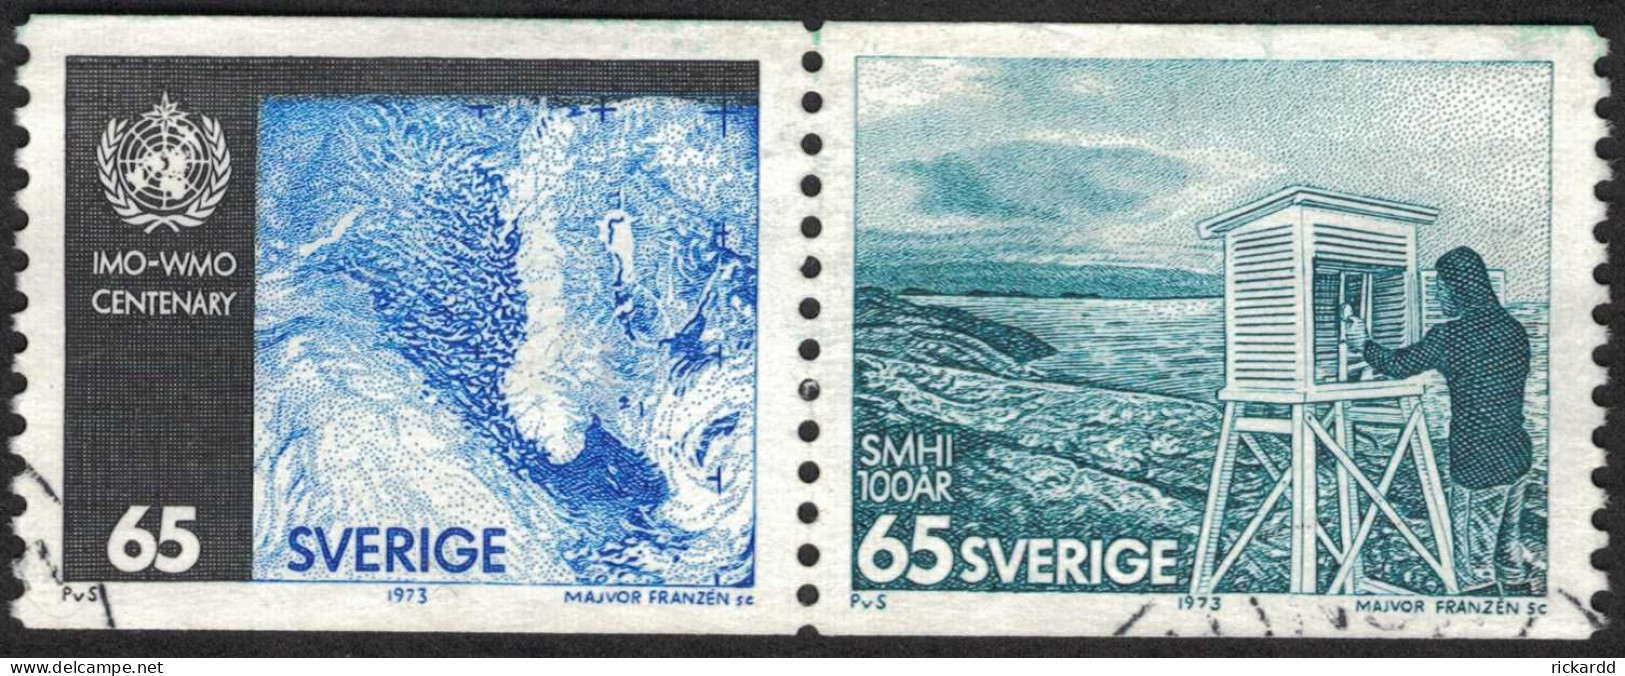 Sweden - Facit #824SX2 Väderlekstjänsten 100 år, 65 öre Blå/svart/blågrön - Used Stamps